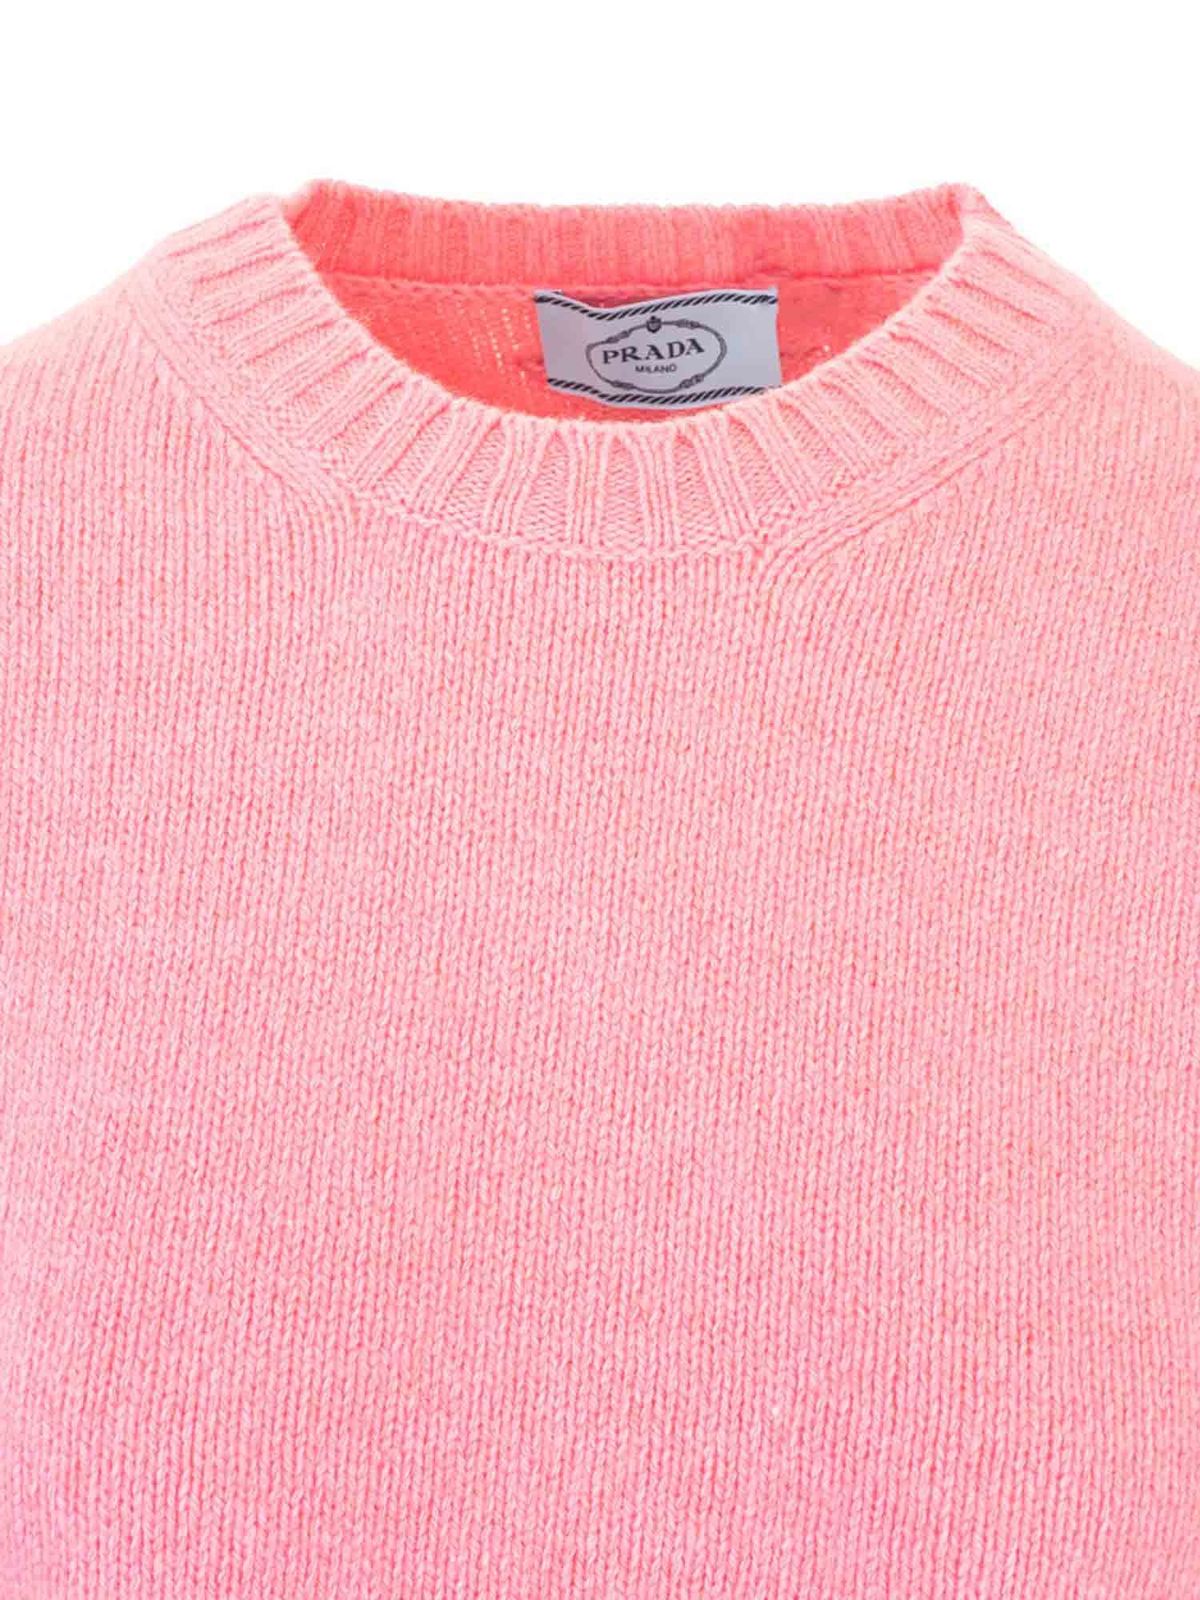 クルーネック Prada - スウェットシャツ/セーター - ピンク - P24C1S1APRF0638